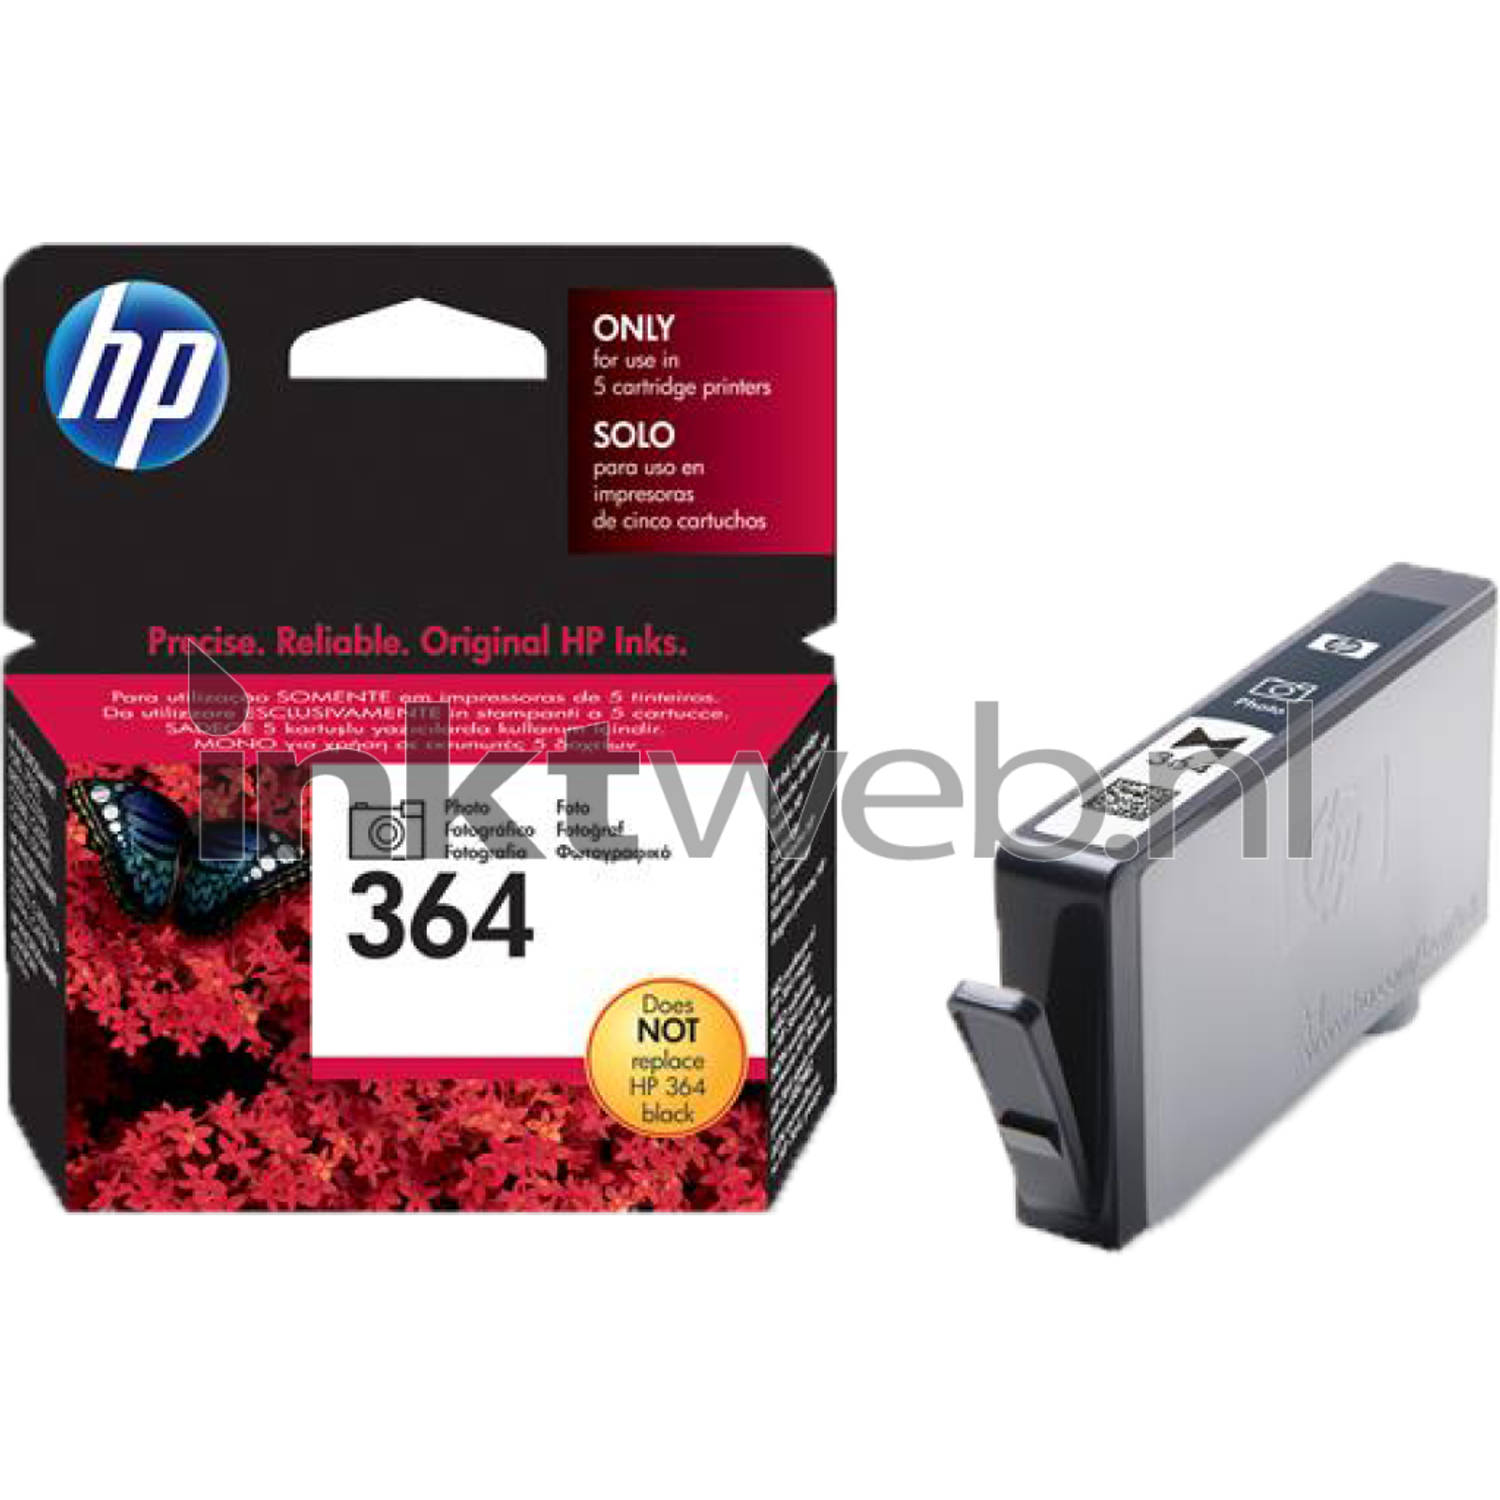 HP Inkt voor printer CONSUMABLES Inktpatroon voor printer Inkt voor printer Inkt voor printer